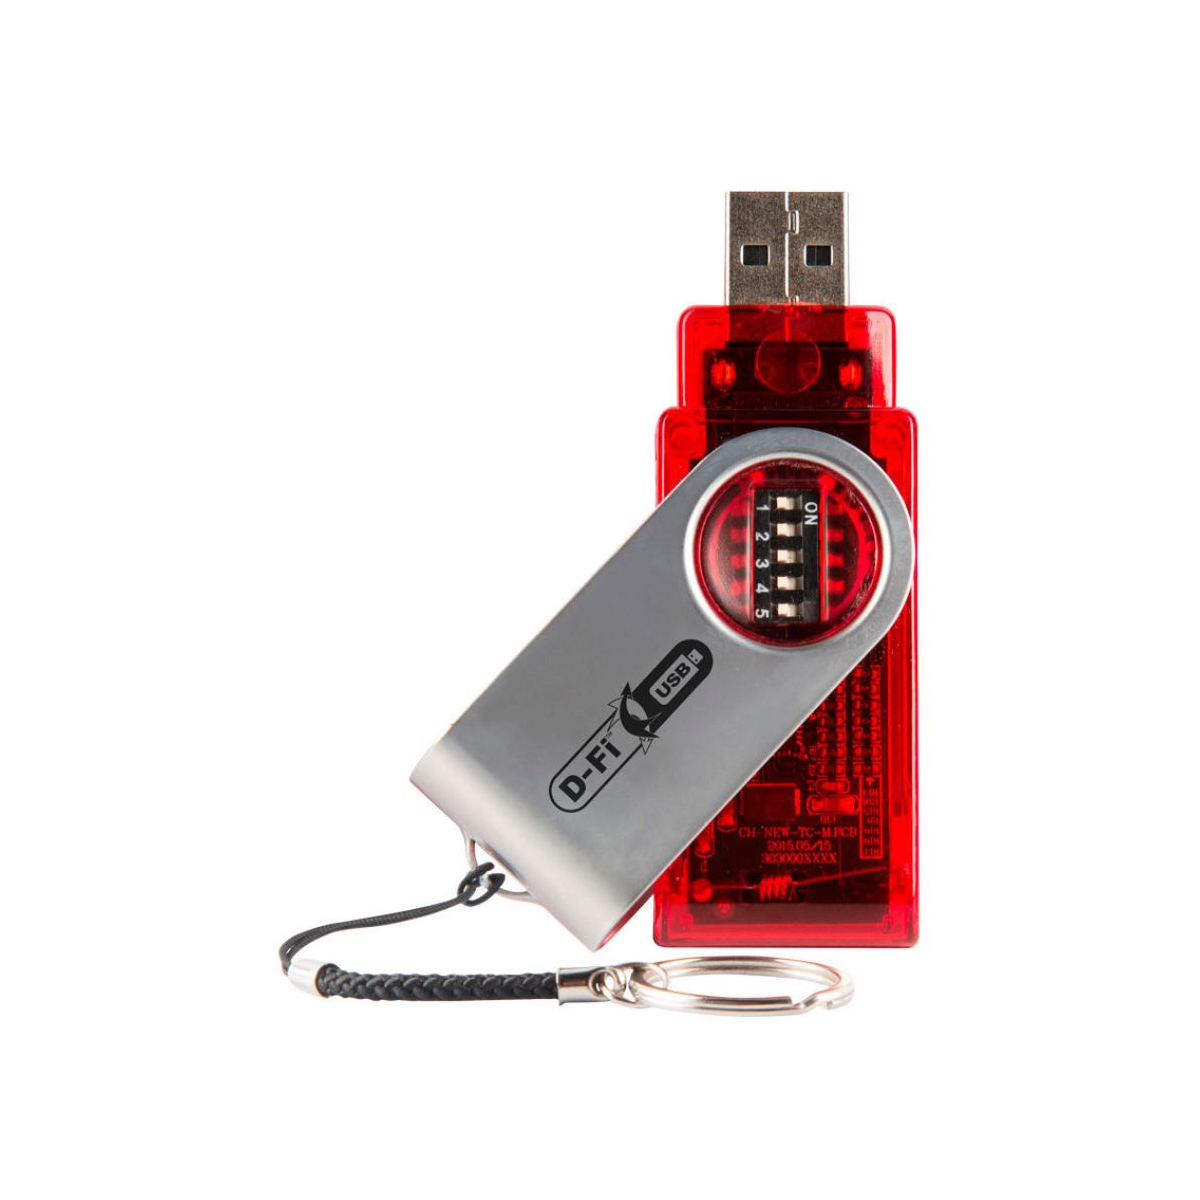 DMX sans fil - Chauvet DJ - D-Fi USB